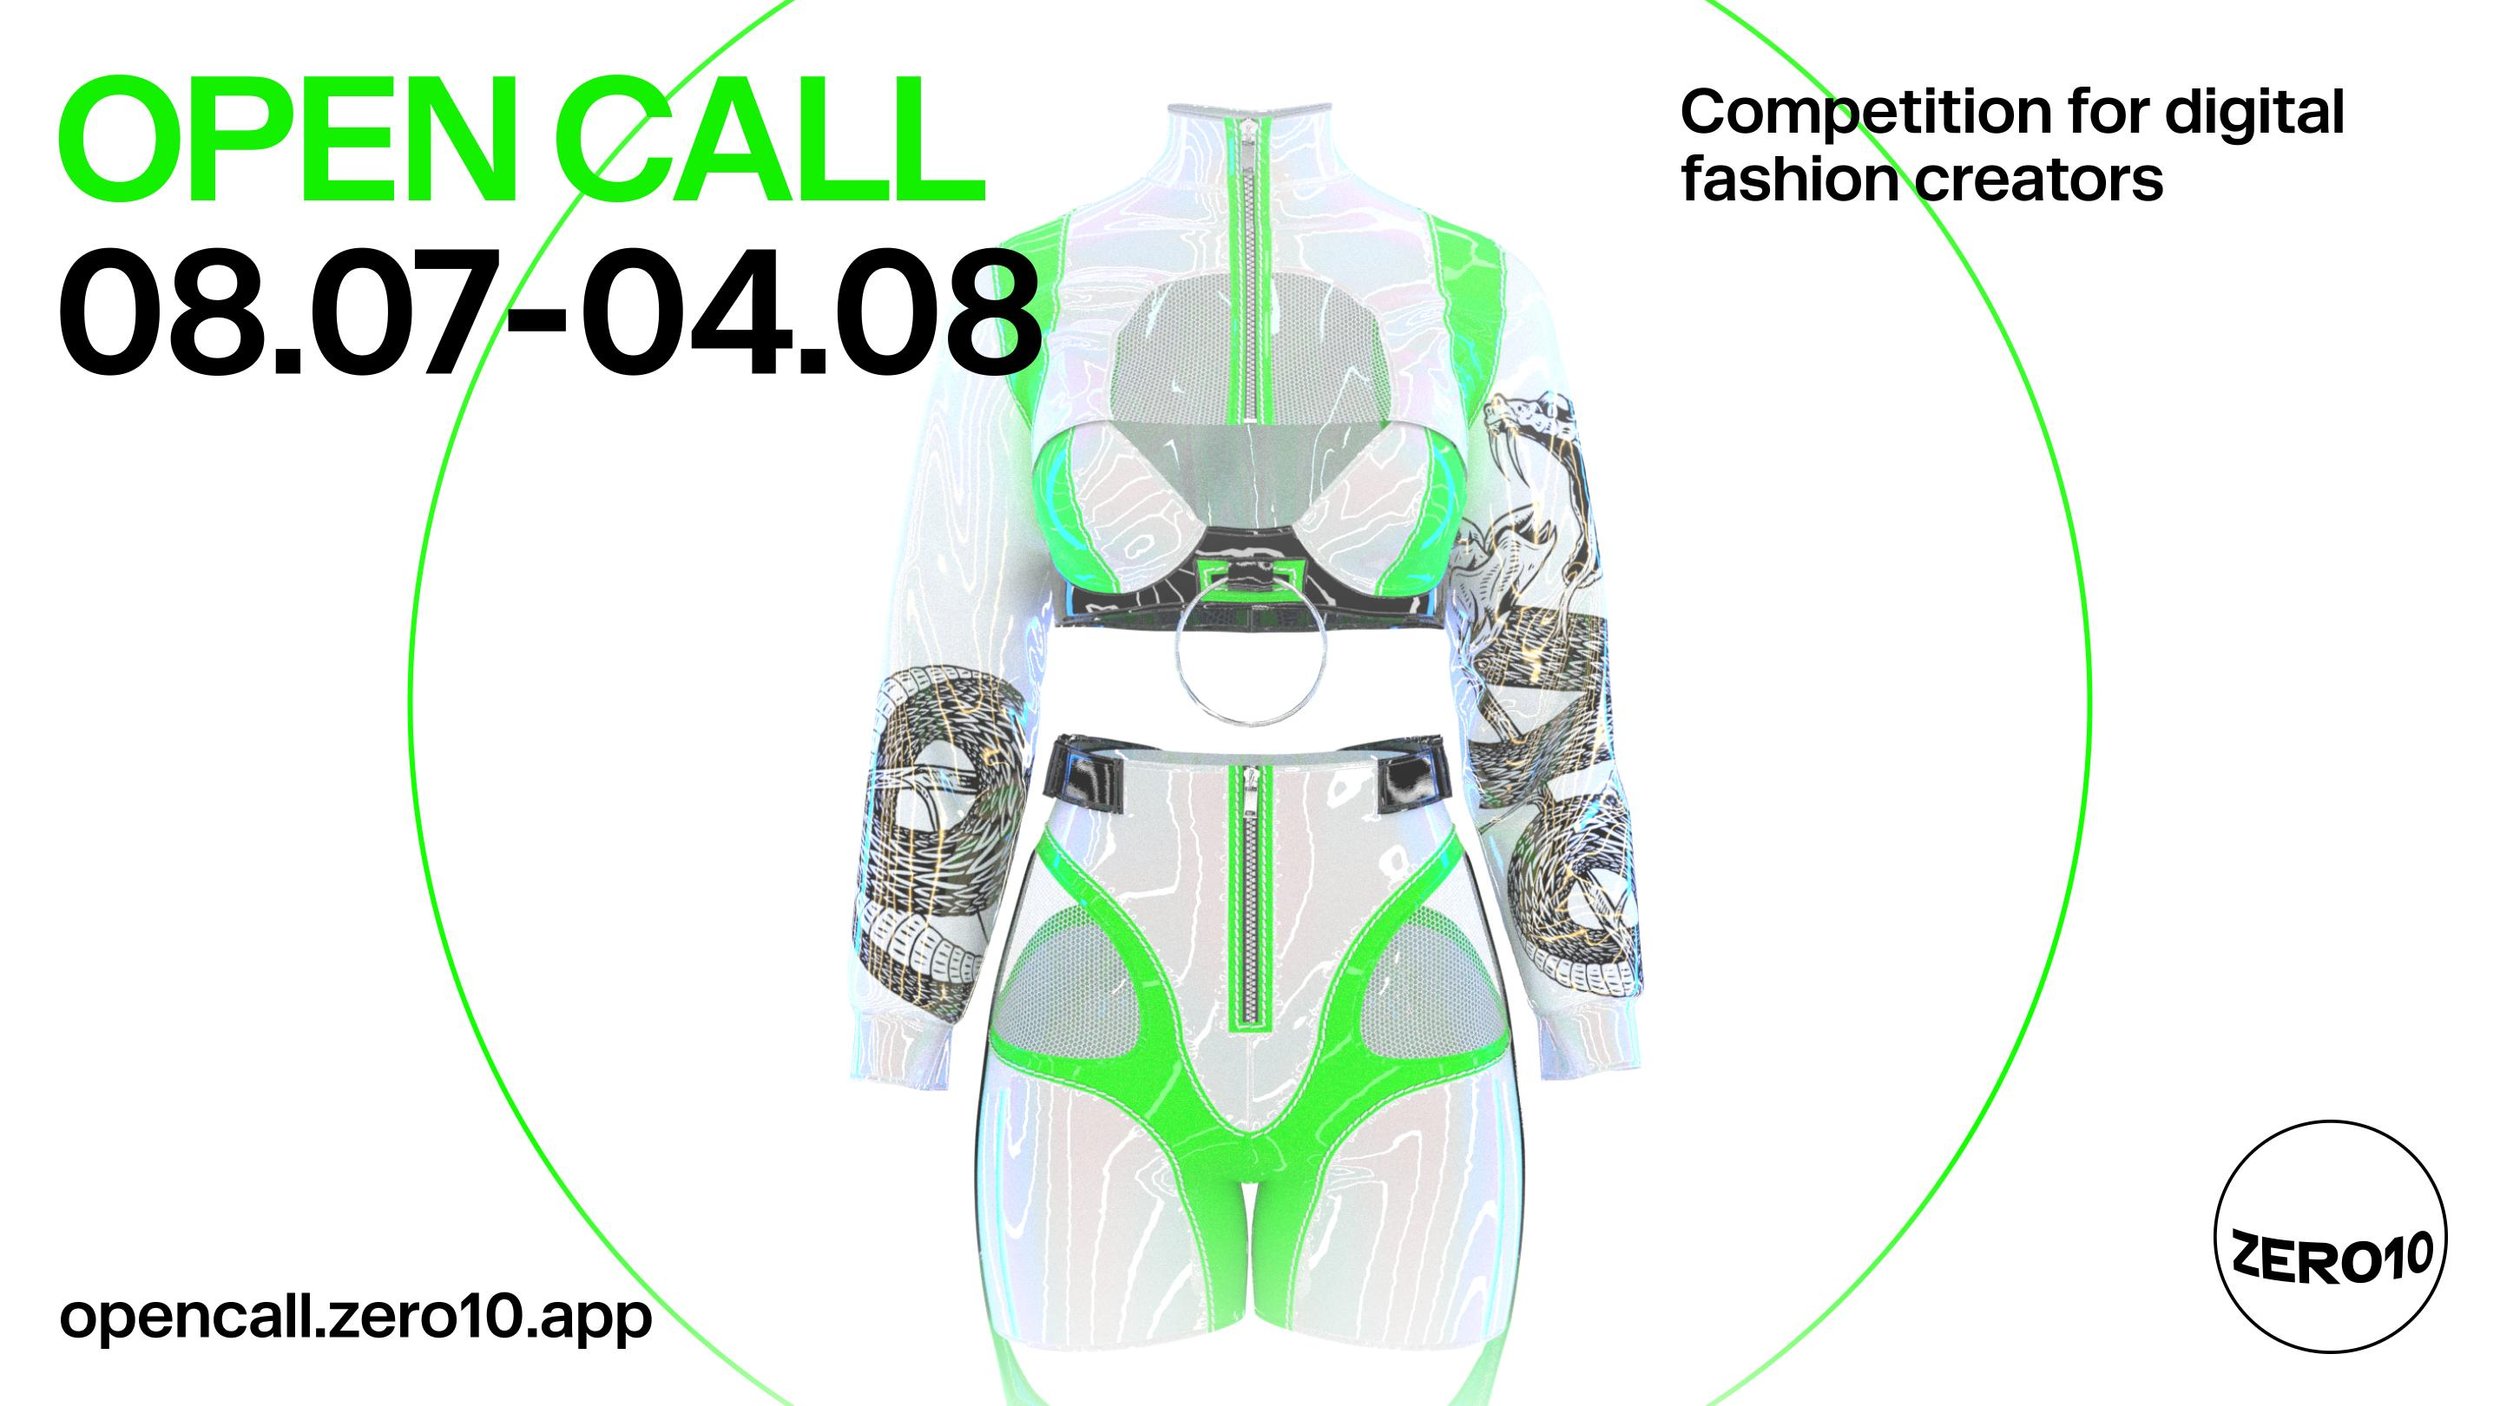 ZERO10 Announce Open Call Competition For Digital Fashion Creators